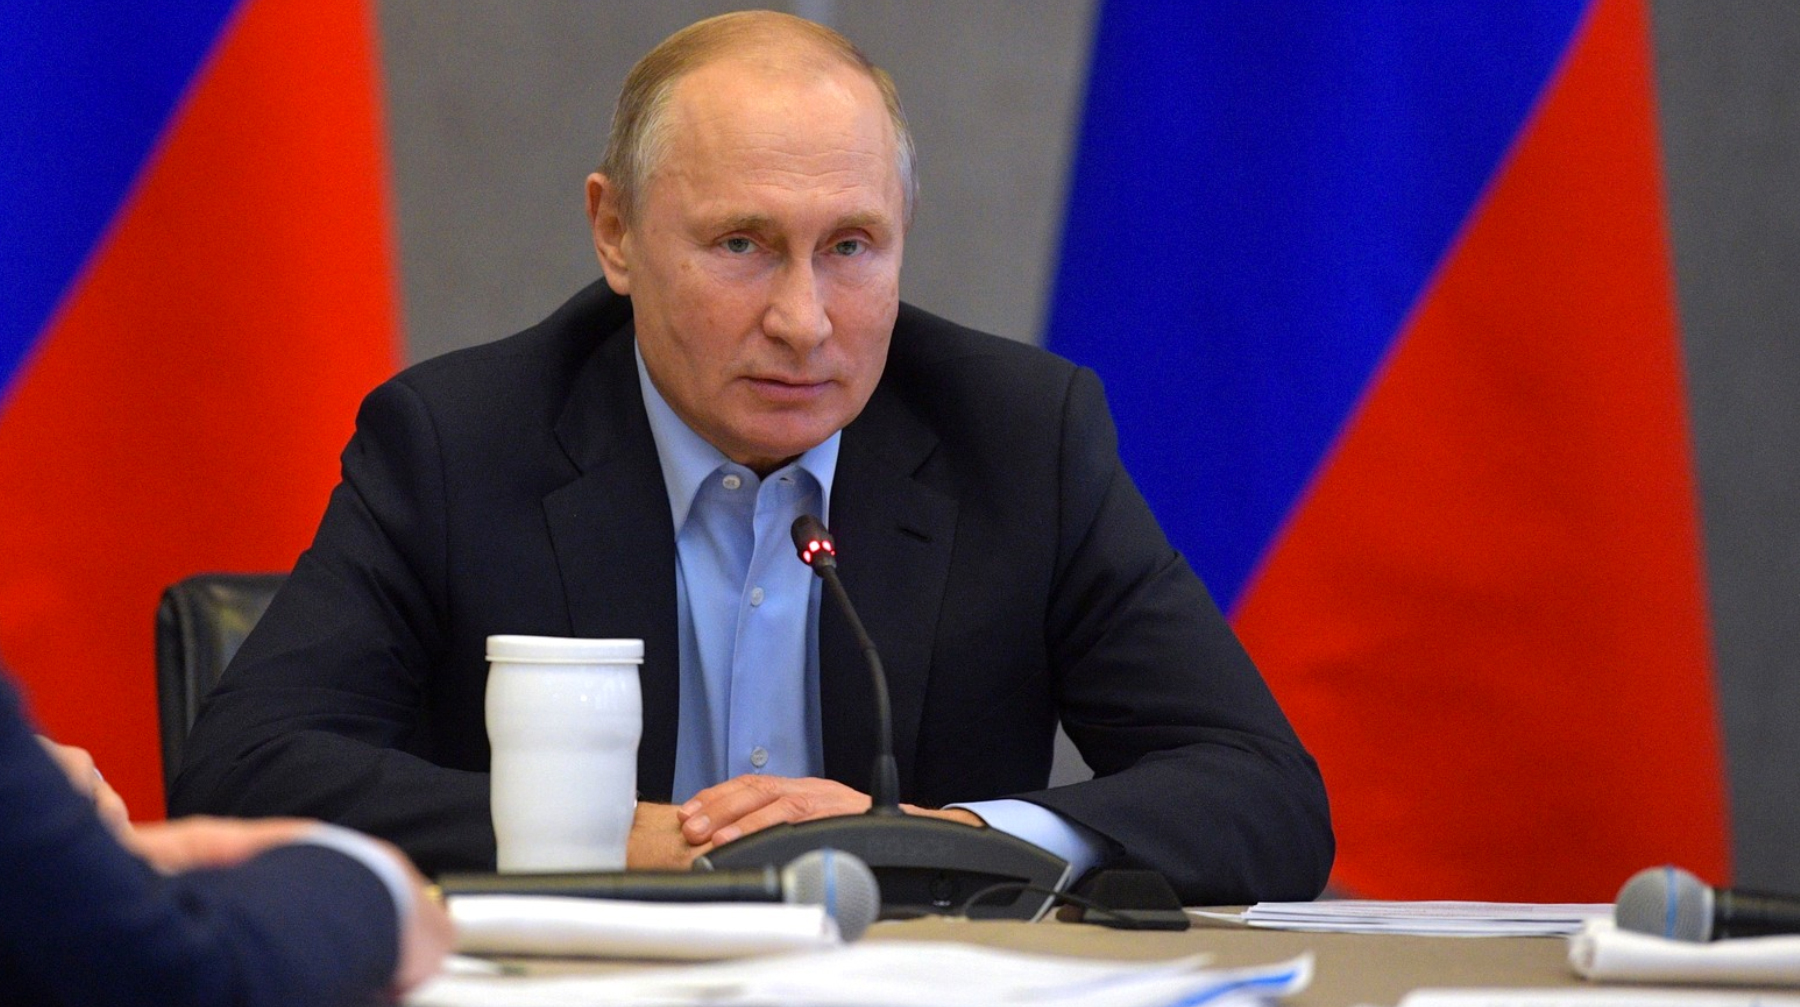 Президент России предлагает закрывать дела о мелких преступлениях после возмещения нанесенного ущерба и принесения извинений Фото: © kremlin.ru